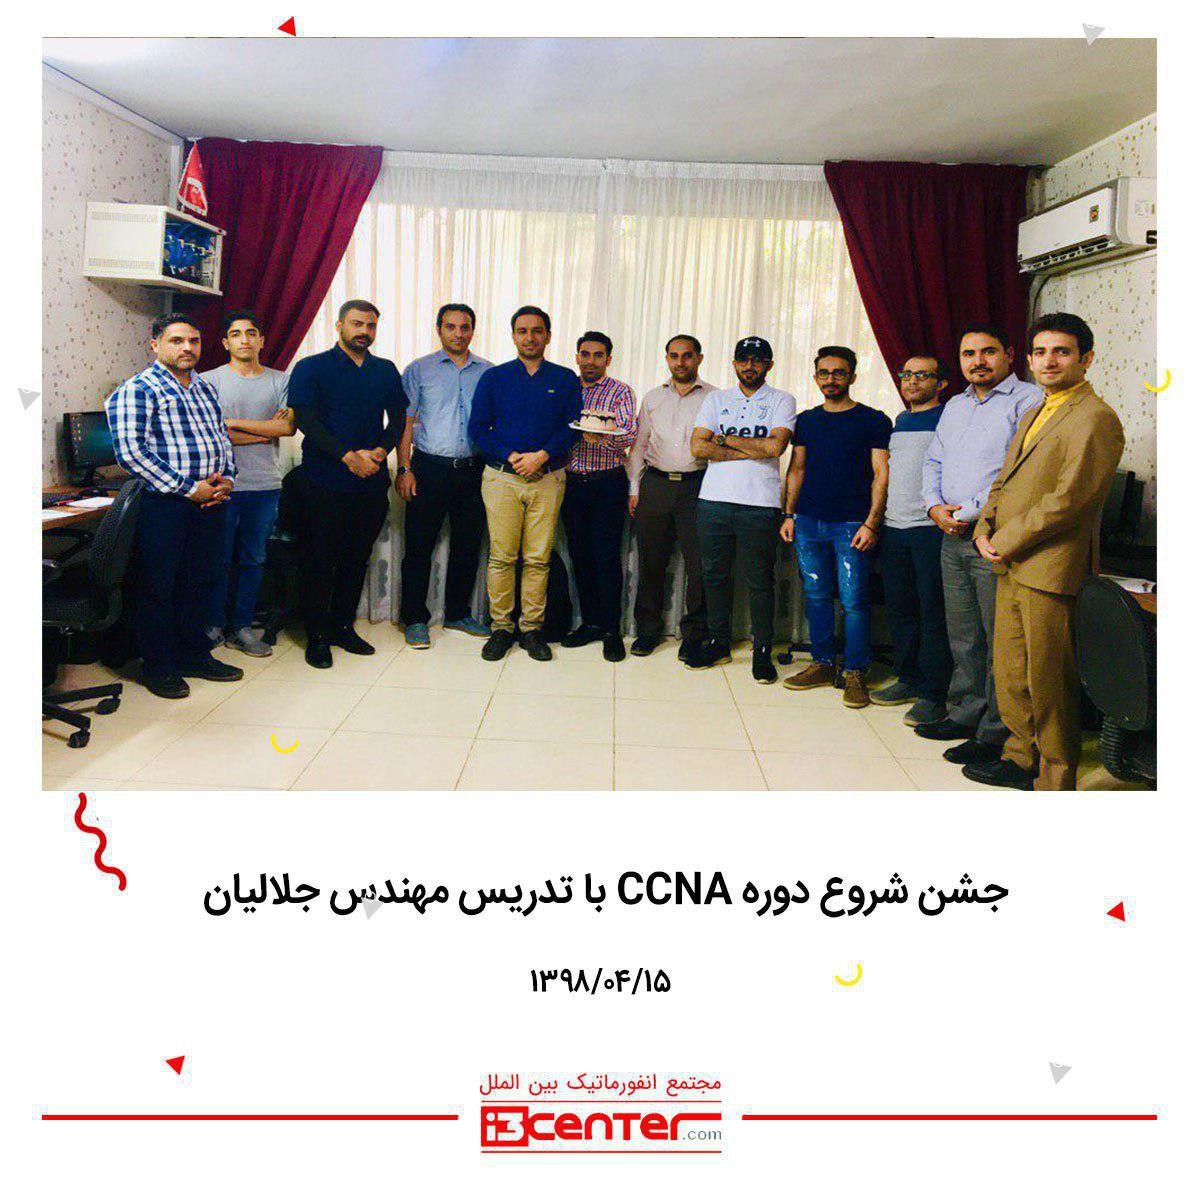 جشن شروع دوره CCNA با تدریس مهندس محمد جلالیان